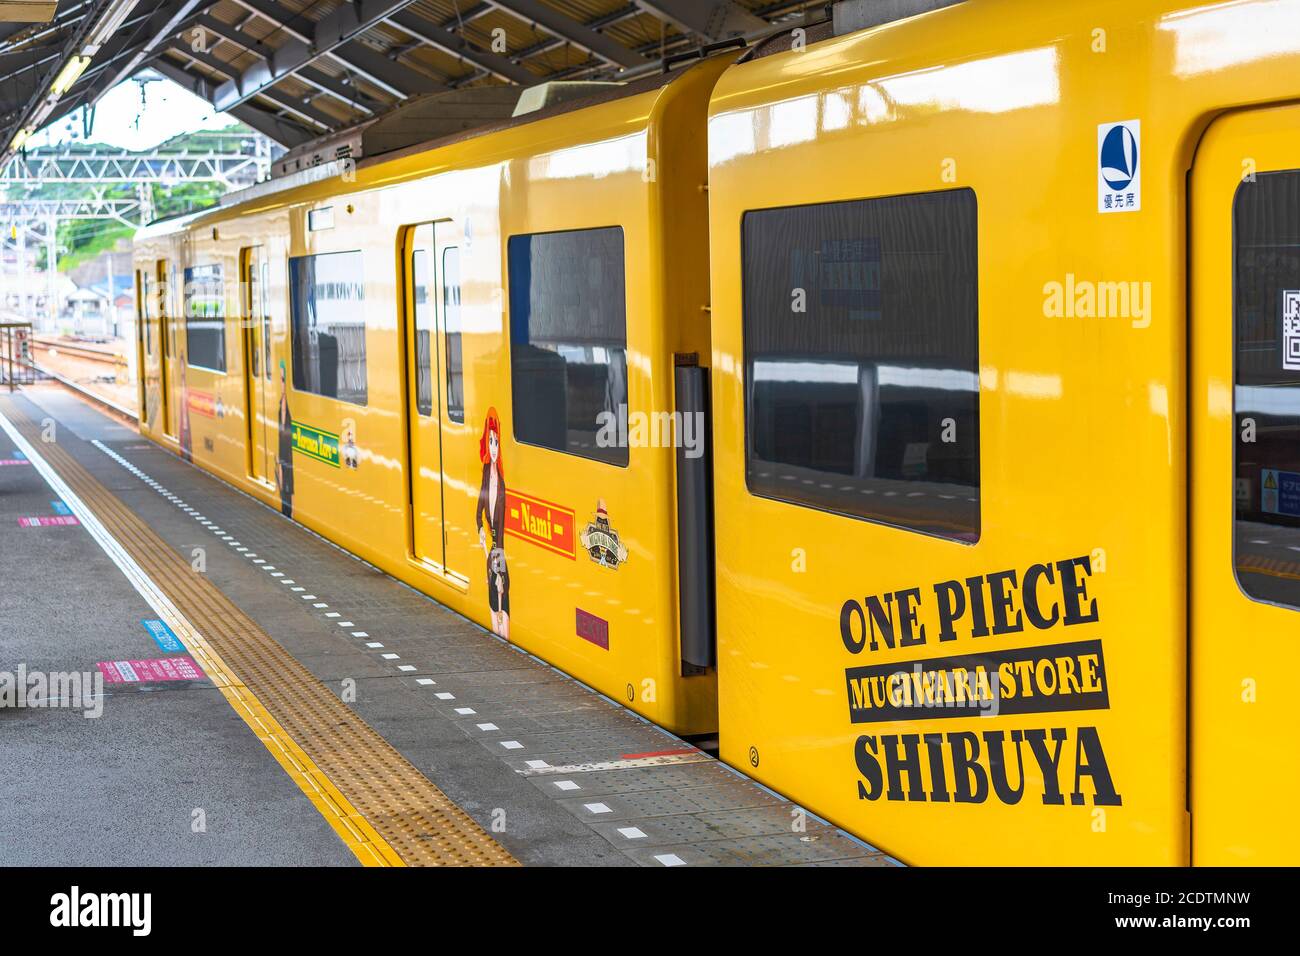 kanagawa, japon - juillet 19 2020: Train jaune de la ligne de Yokosuka enveloppé d'autocollants publicitaires de manga et de personnages d'anime Nami, Zoro et Luffy pour Banque D'Images